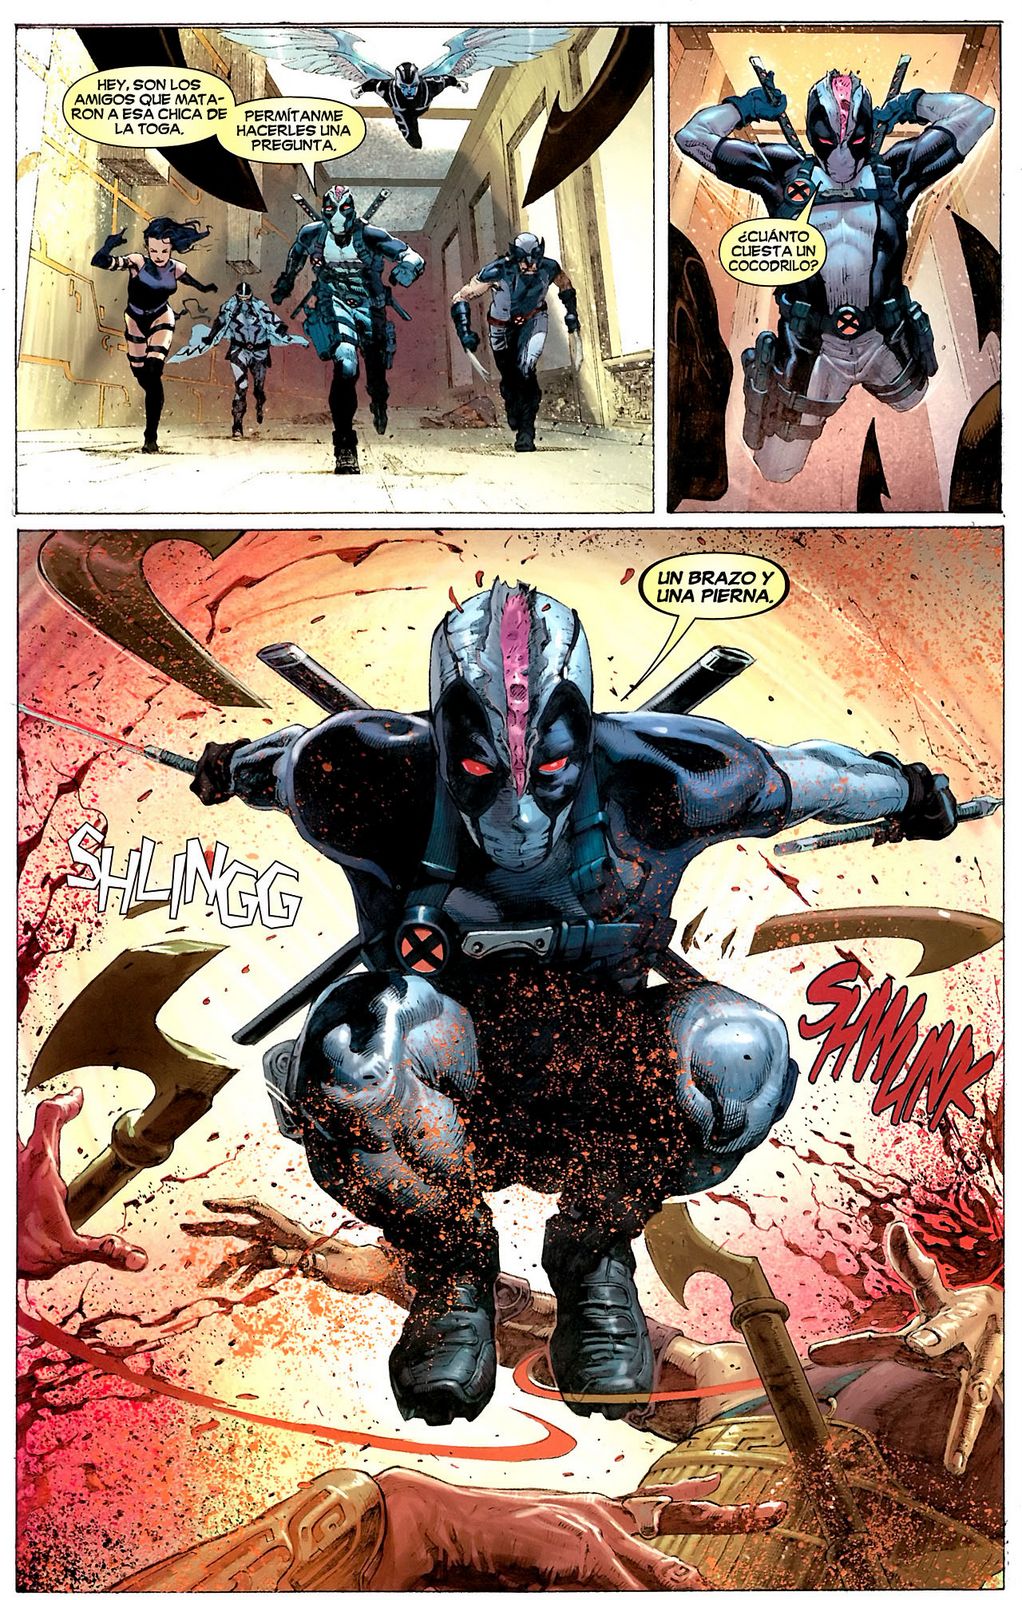 Uncanny X-Men 2013 #1 Comics Marvelcom